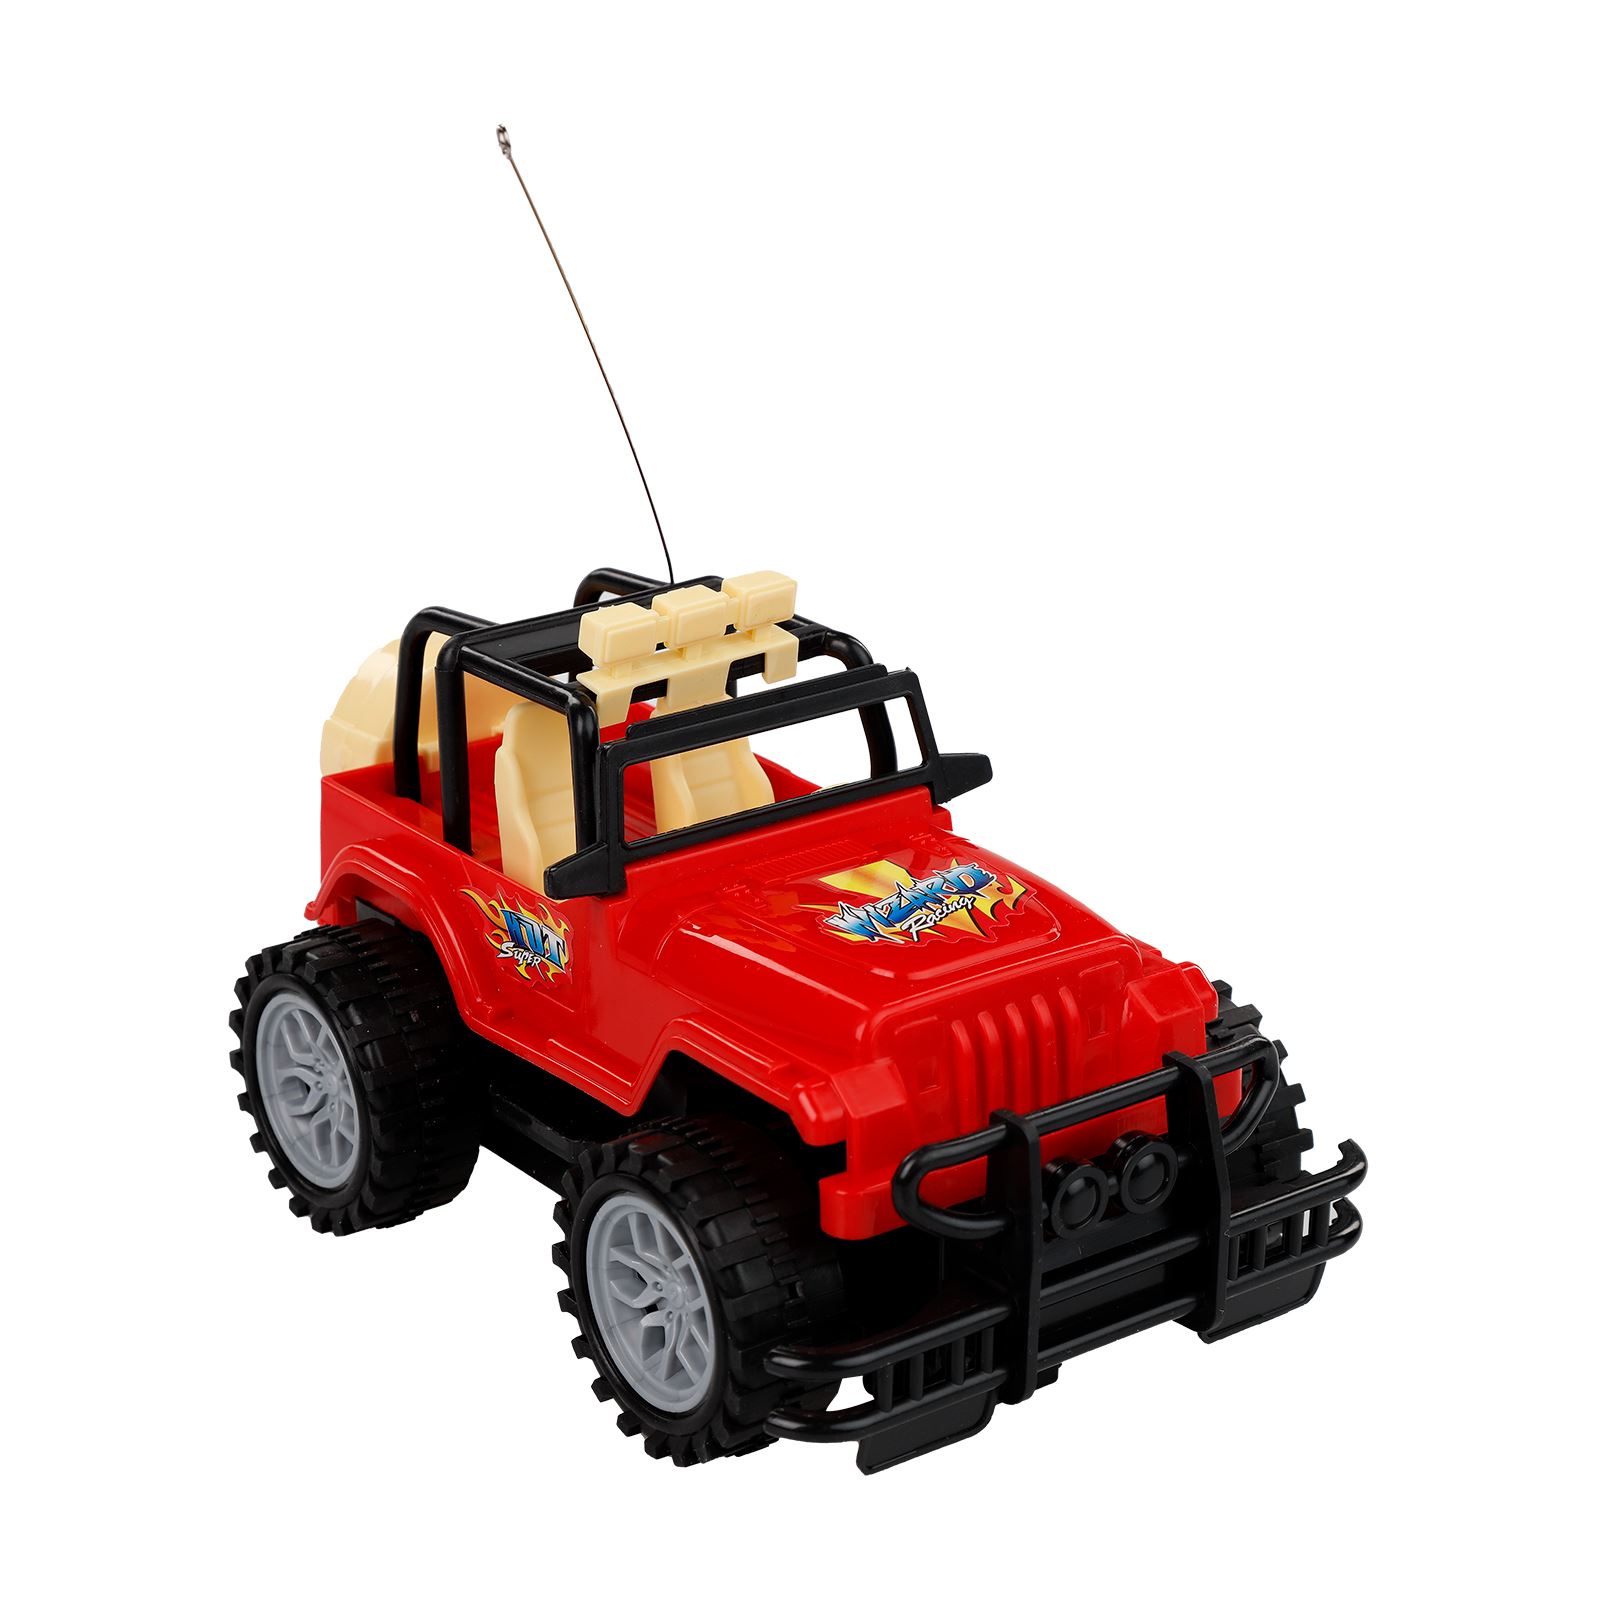 Prestij Oyuncak 2 Fonksiyonlu Safari Jeep Kırmızı